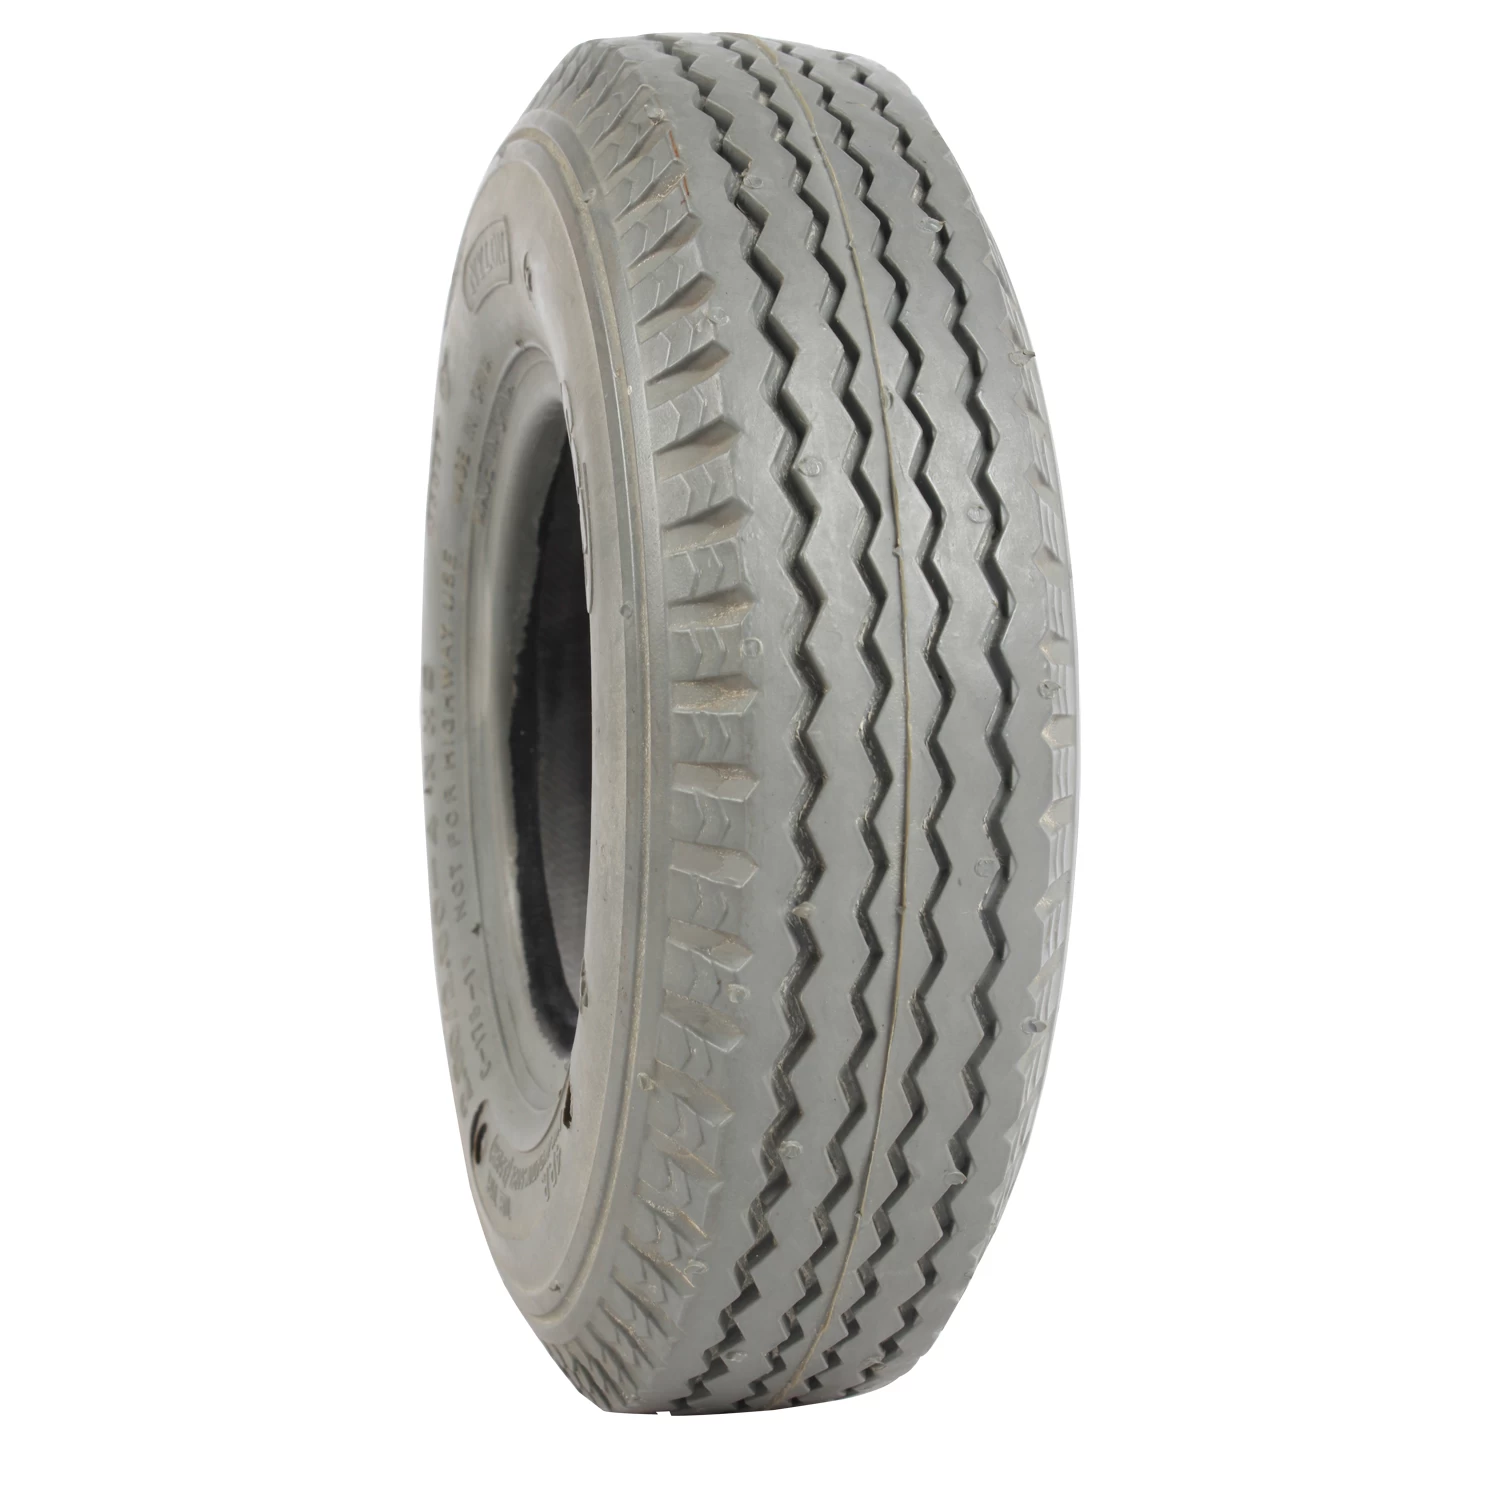 OEM custom manufacturer solid rubber tires for cars